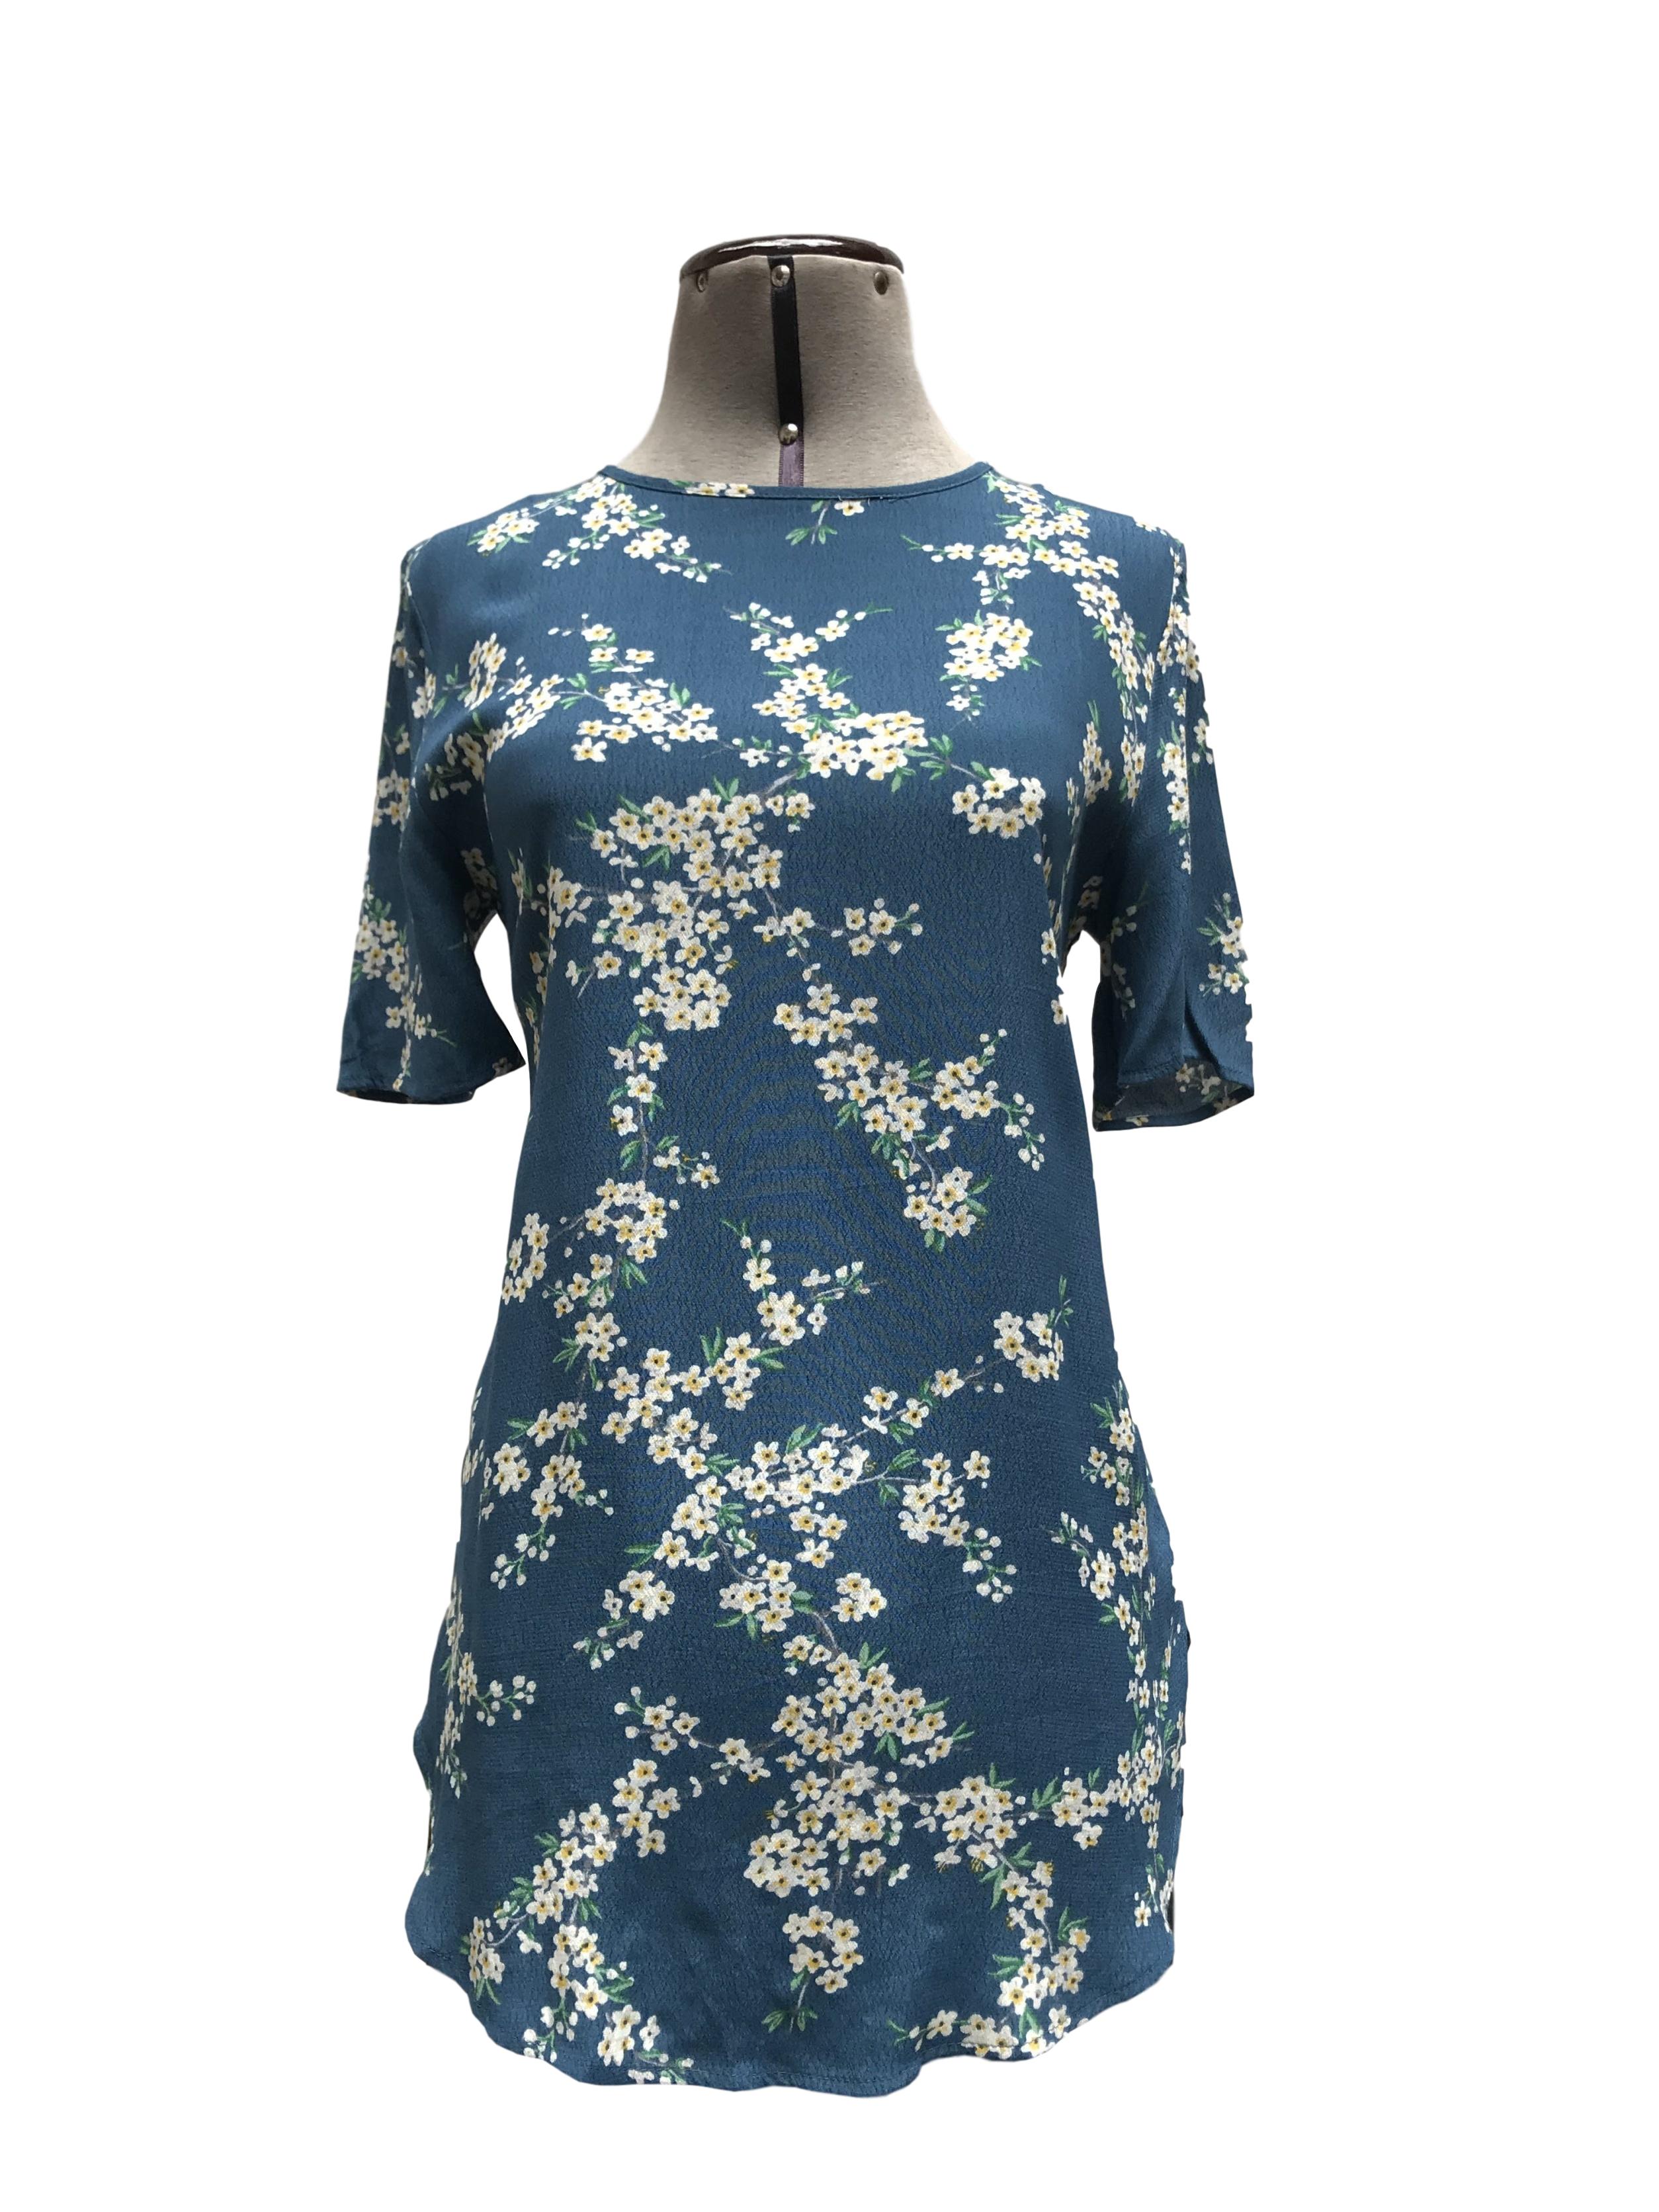 Blusa larga azul con estampado de flores, manga corta, botón posterior en el cuello, bastas redondeadas, es suelta
Talla S